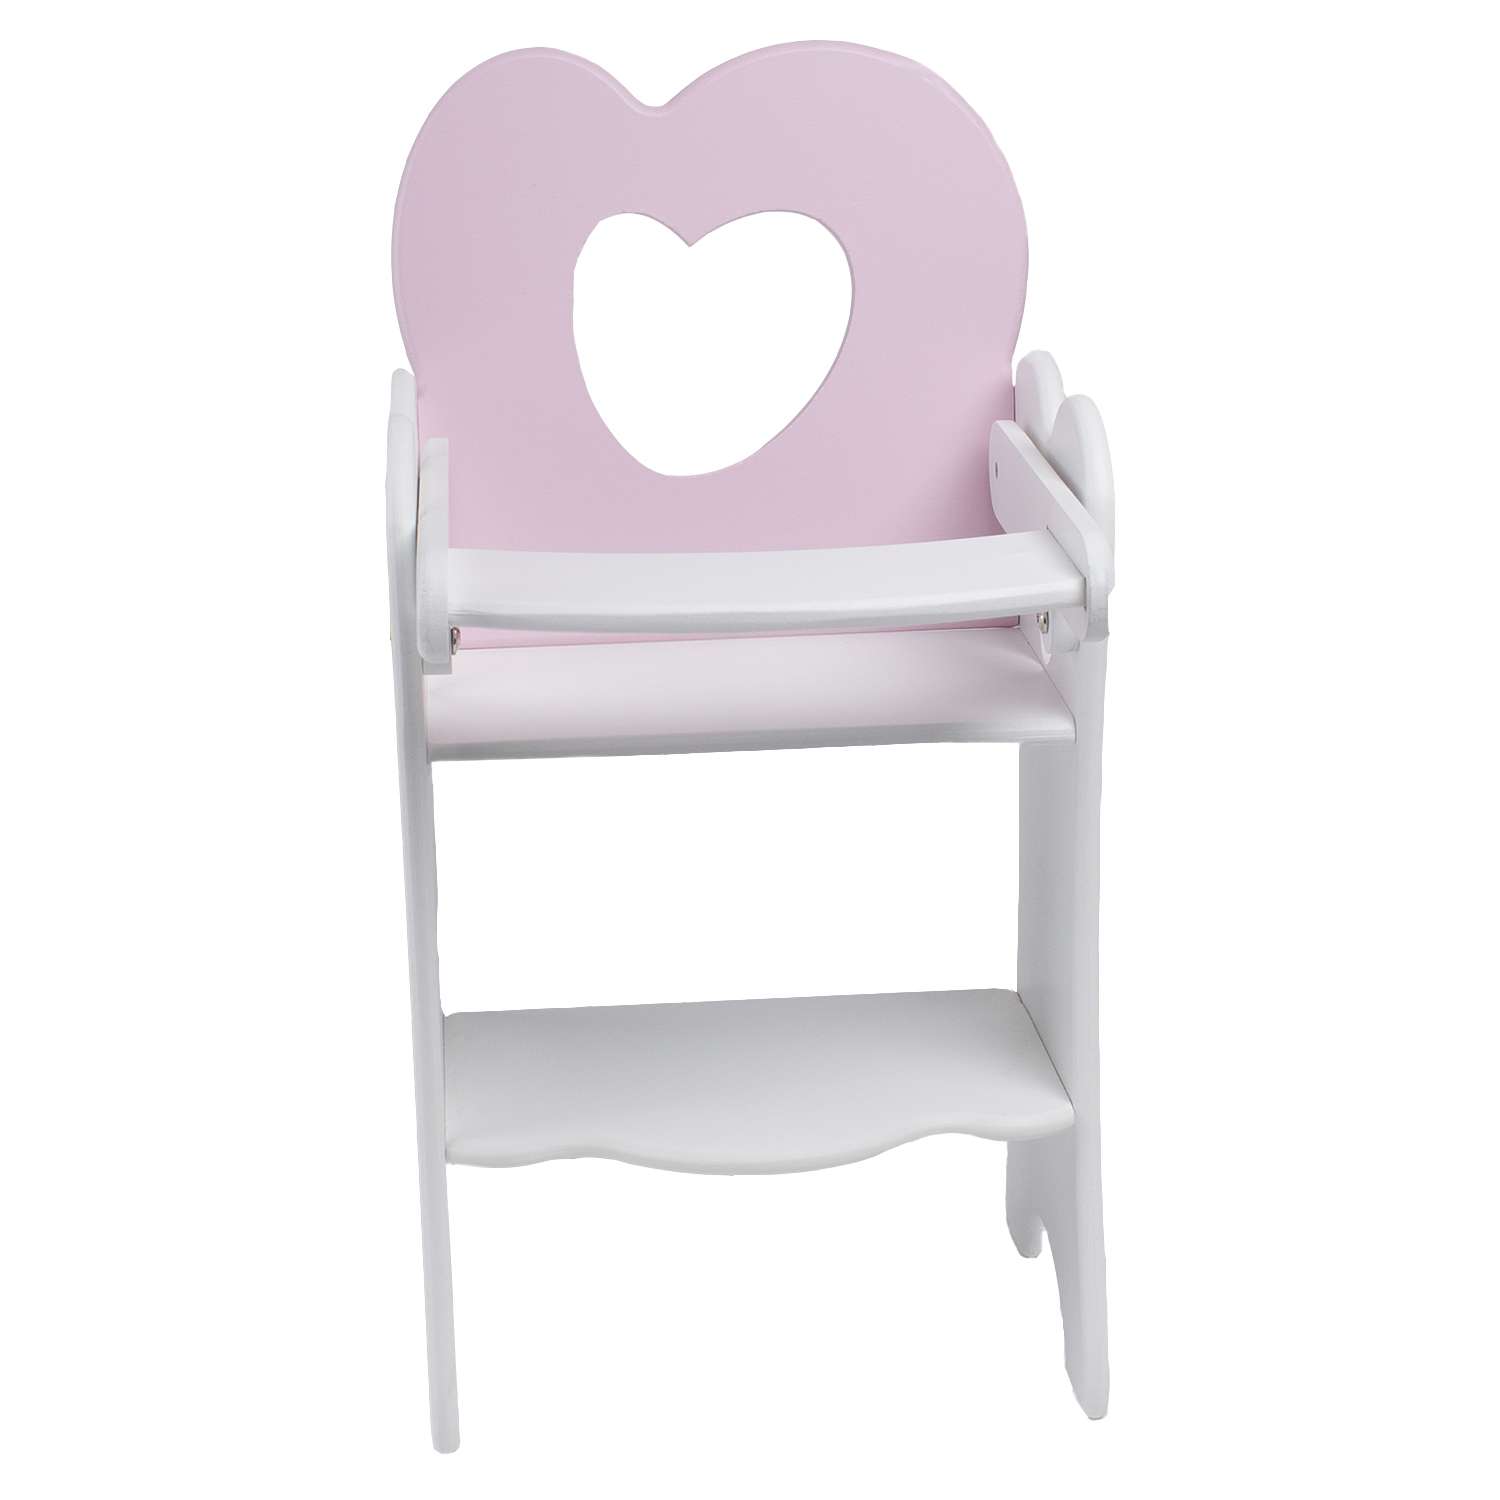 Мебель для кукол PAREMO Стульчик Нежно-розовый PFD120-29 PFD120-29 - фото 1